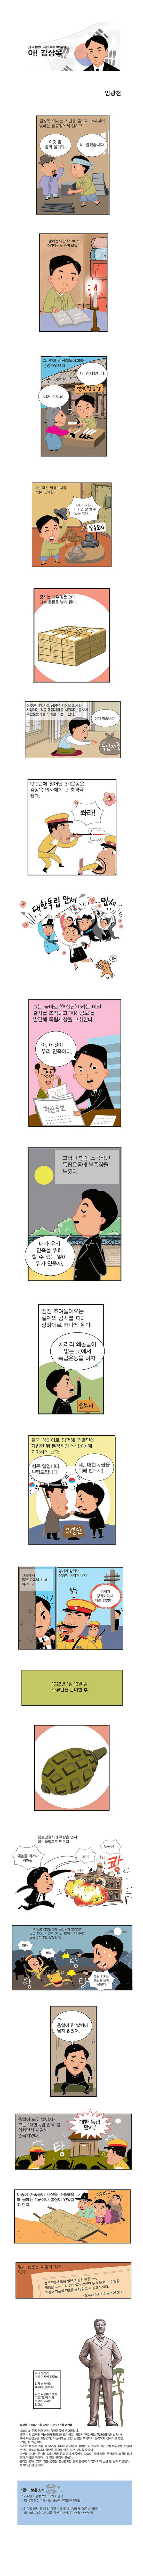 [위클리공감] 종로 경찰서 폭탄투척 100주년 - 아! 김상옥